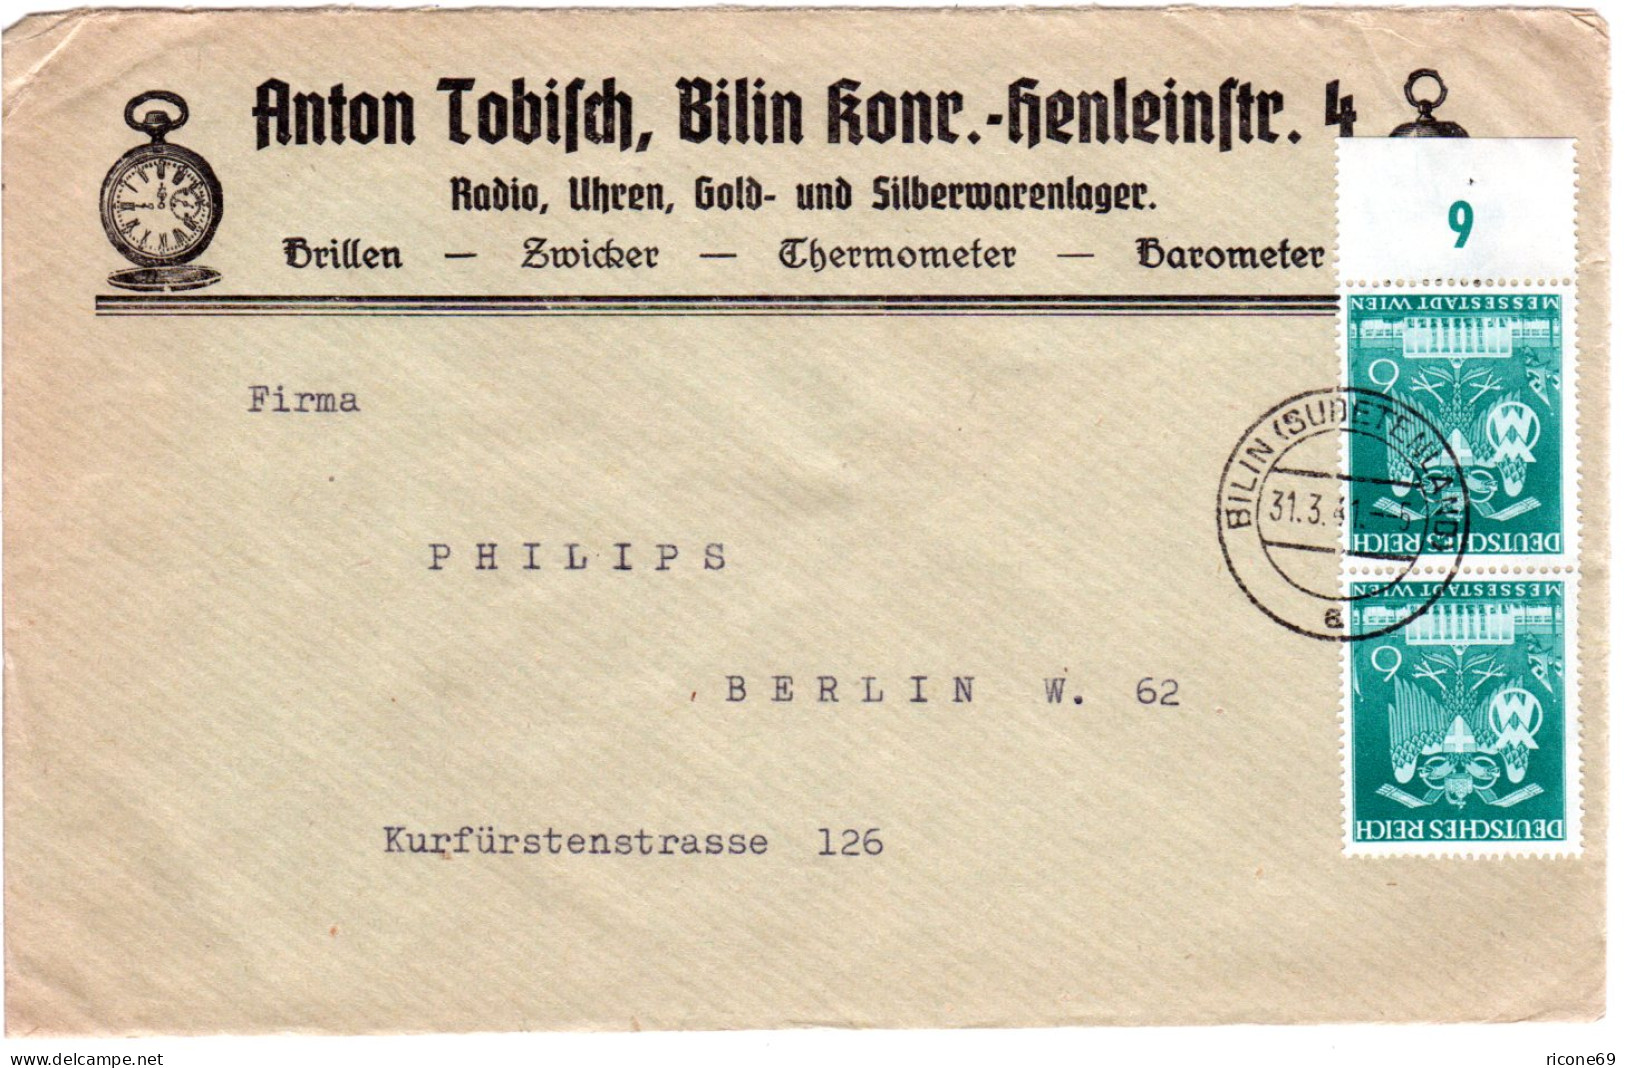 DR 1941, Paar 6 Pf. Auf Firmen Reklame Brief V. Bilin  M. Abb. Taschenuhr - Cartas & Documentos